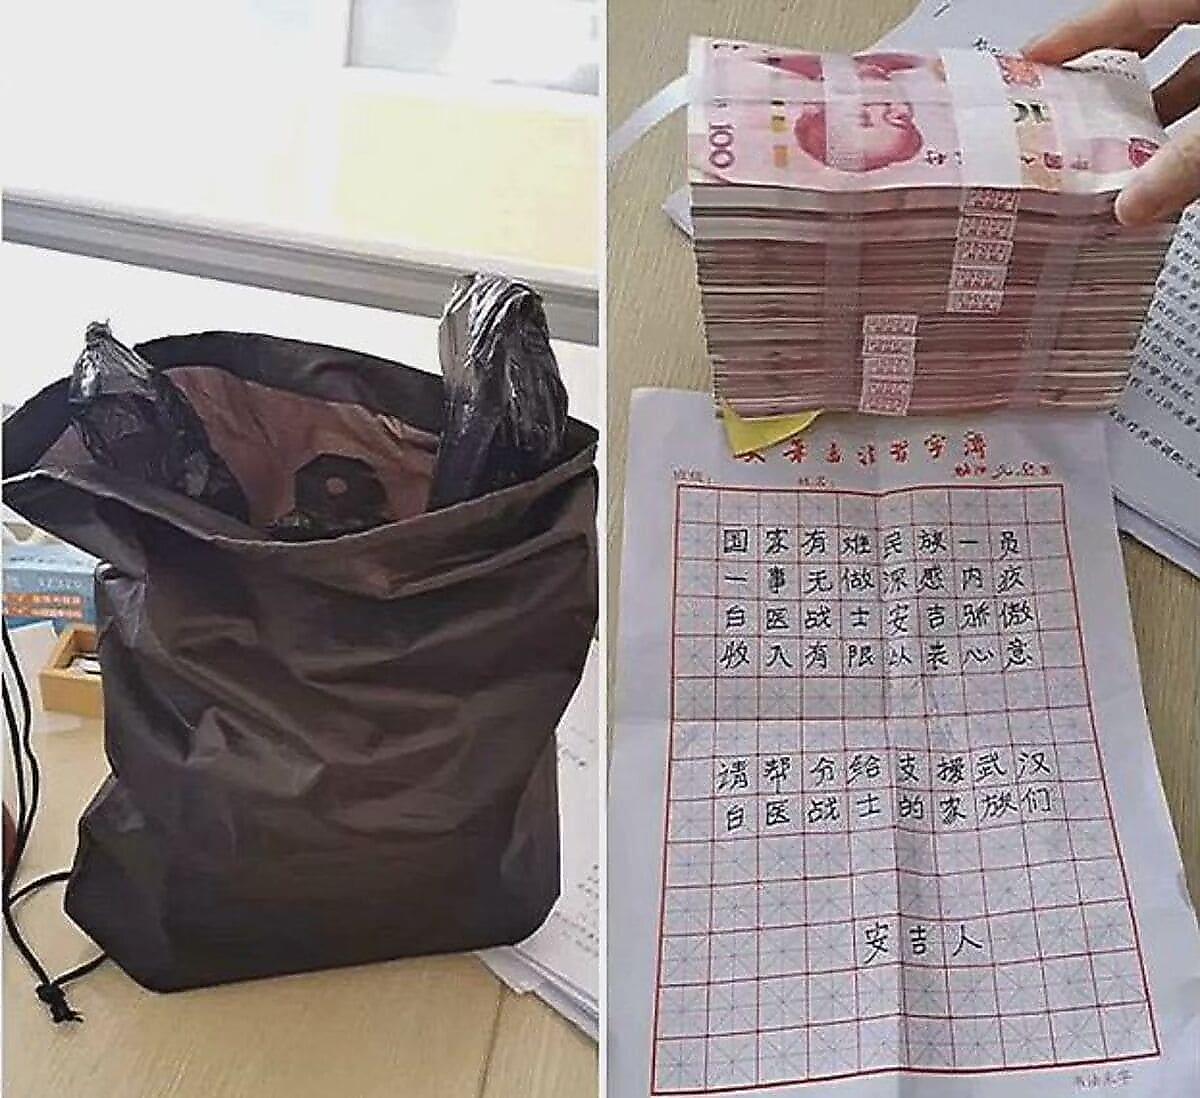 Китайский нувориш испугал медперсонал, подкинув сумку с деньгами в окно приёмной